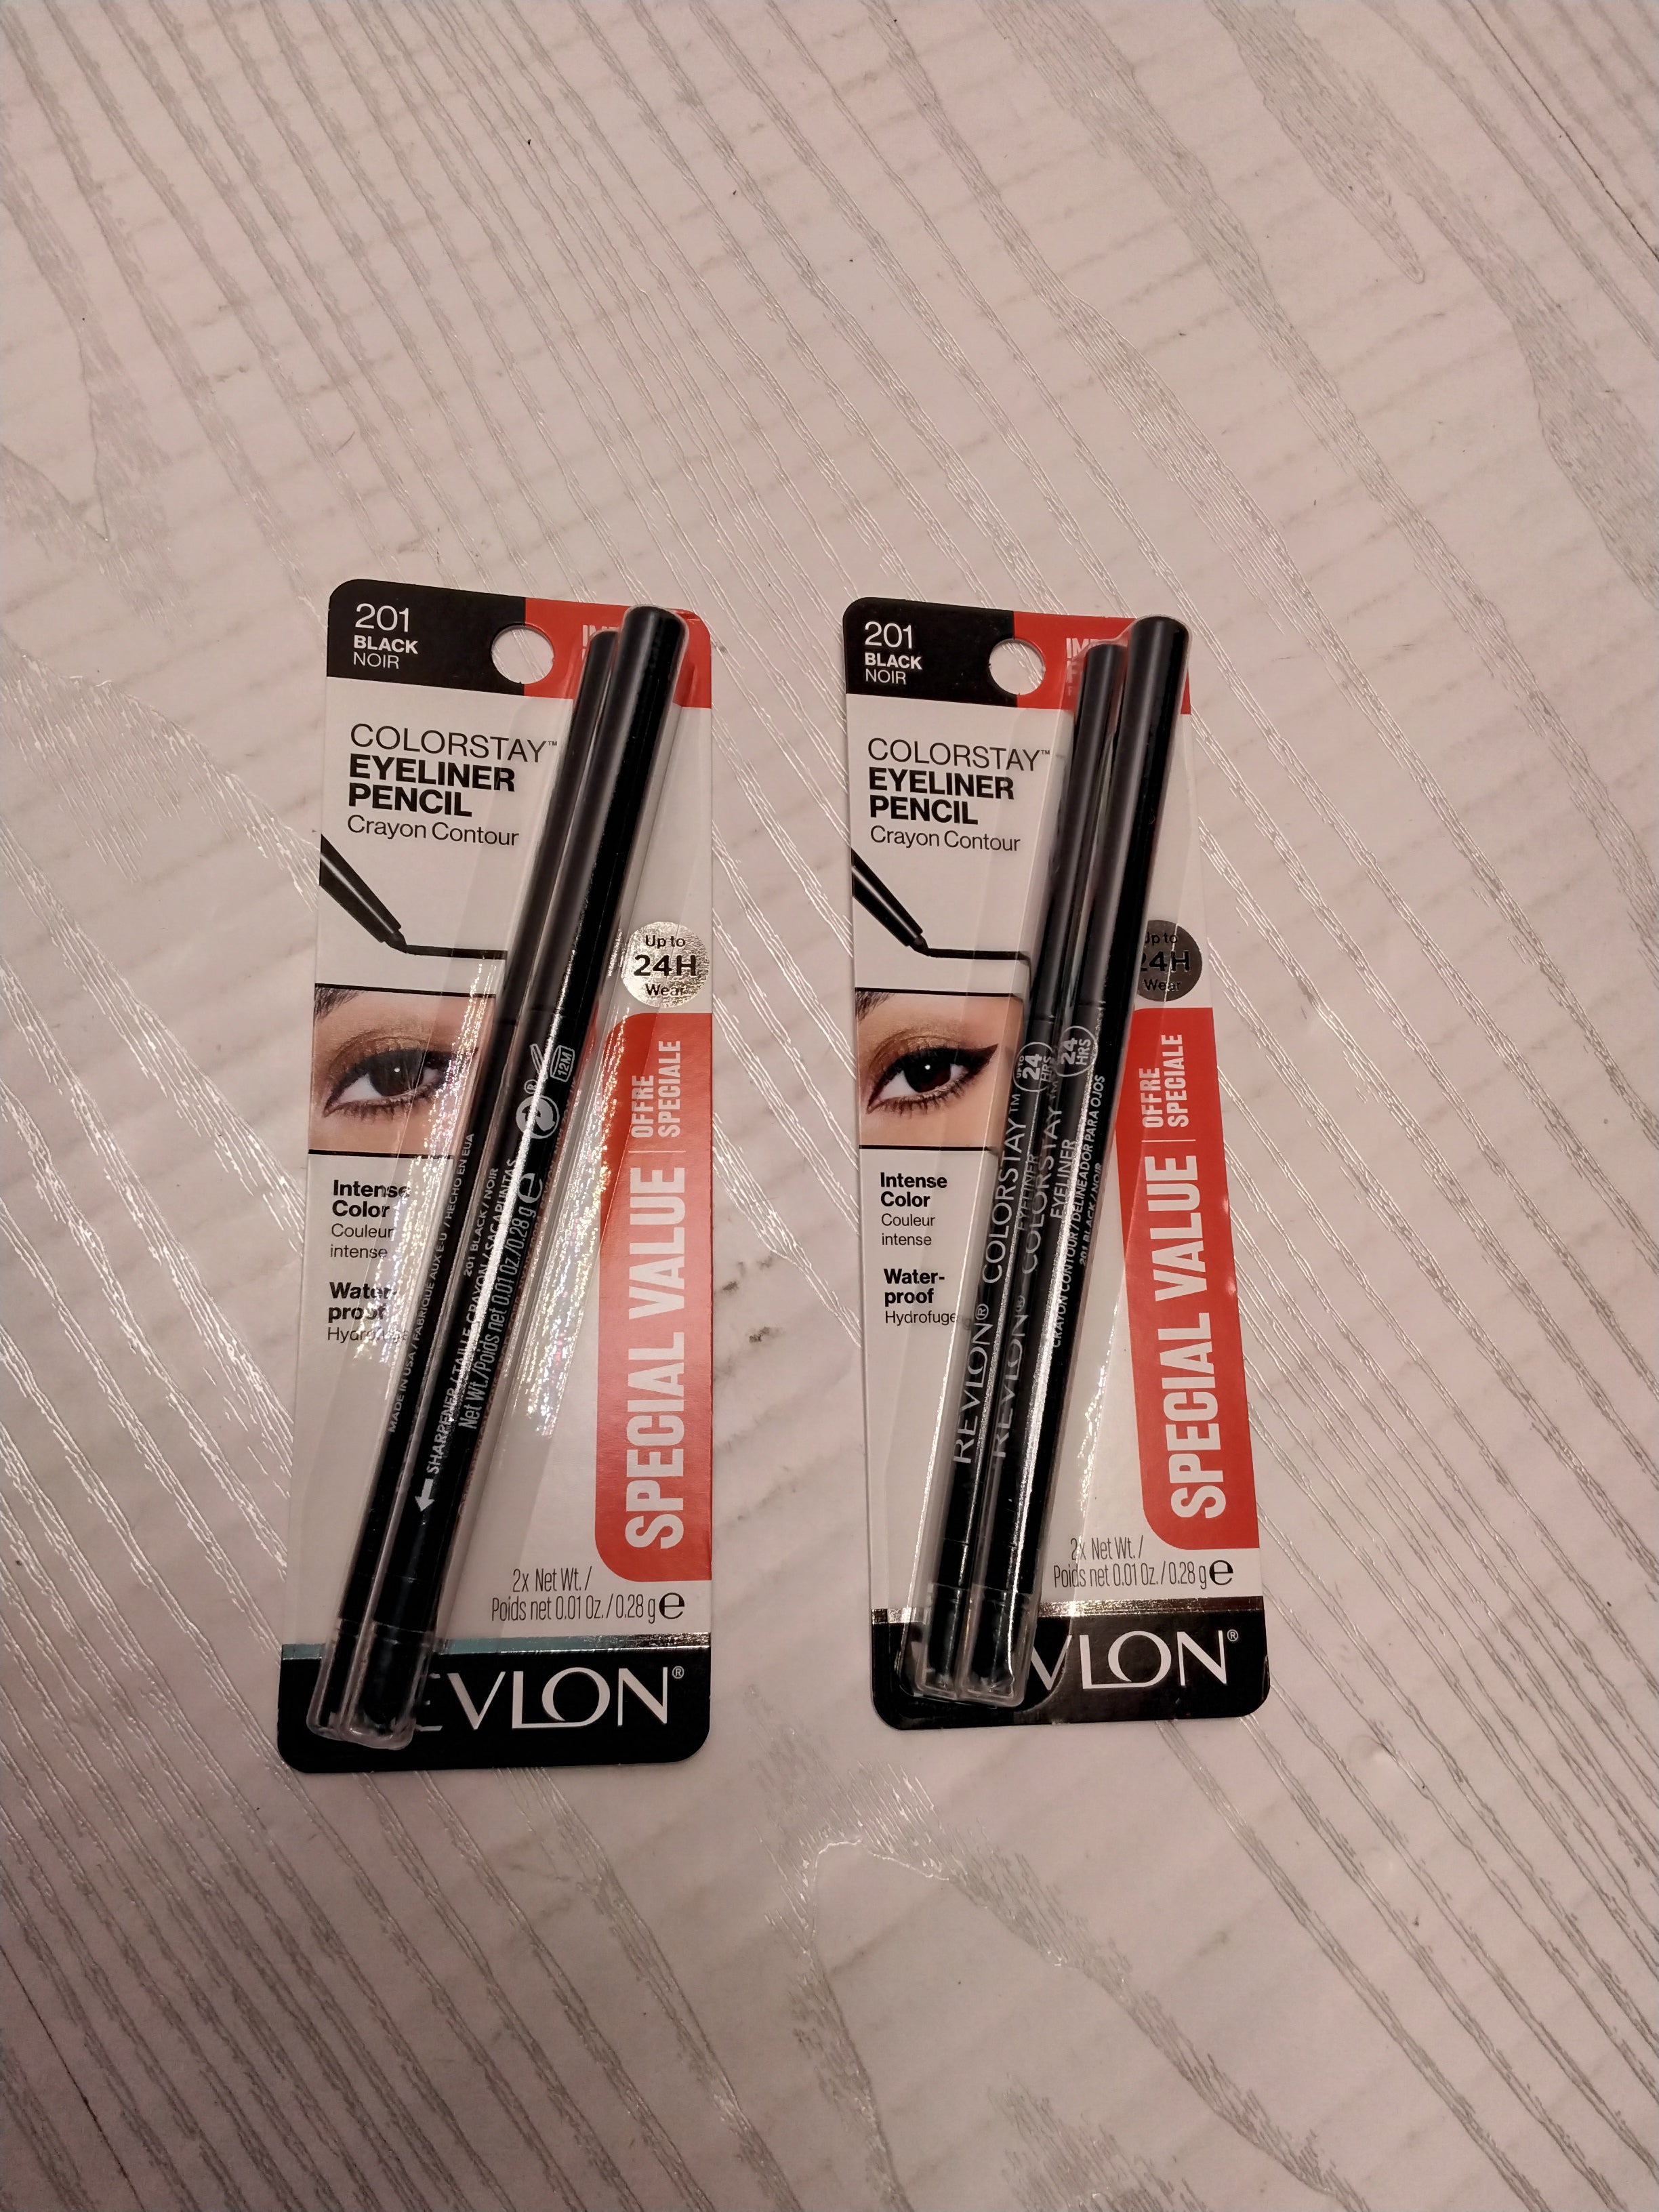 2 PACKS OF 2 Revlon ColorStay Pencil Eyeliner with Ultra-Fine Tip, 201 Black (7923791298798)